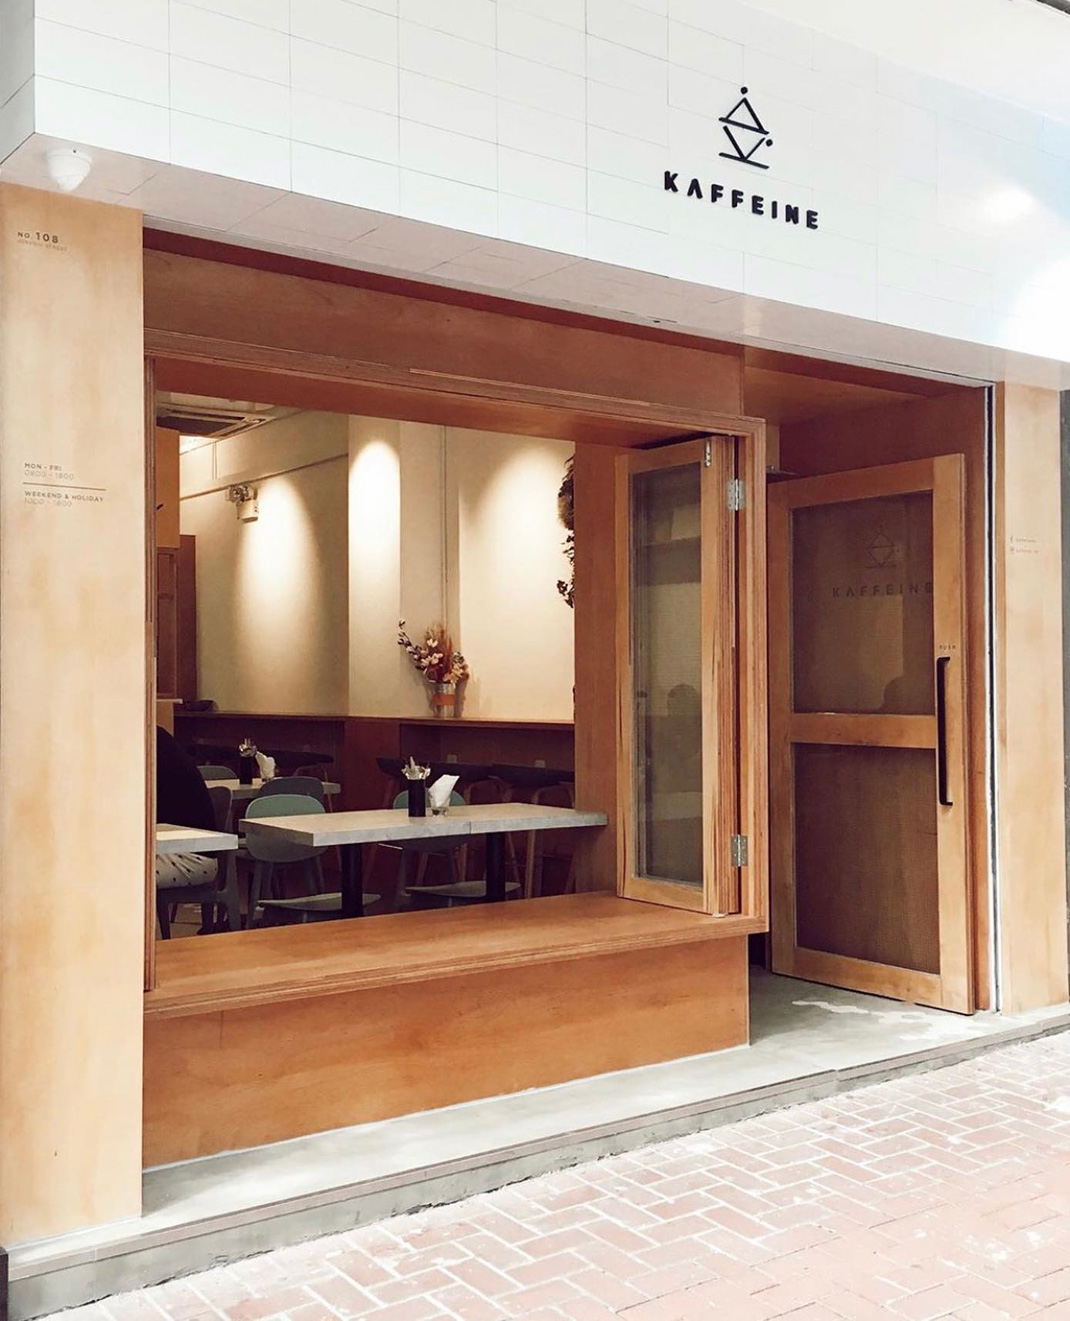 咖啡店Kaffeine 香港 咖啡店 袖珍店 logo设计 vi设计 空间设计